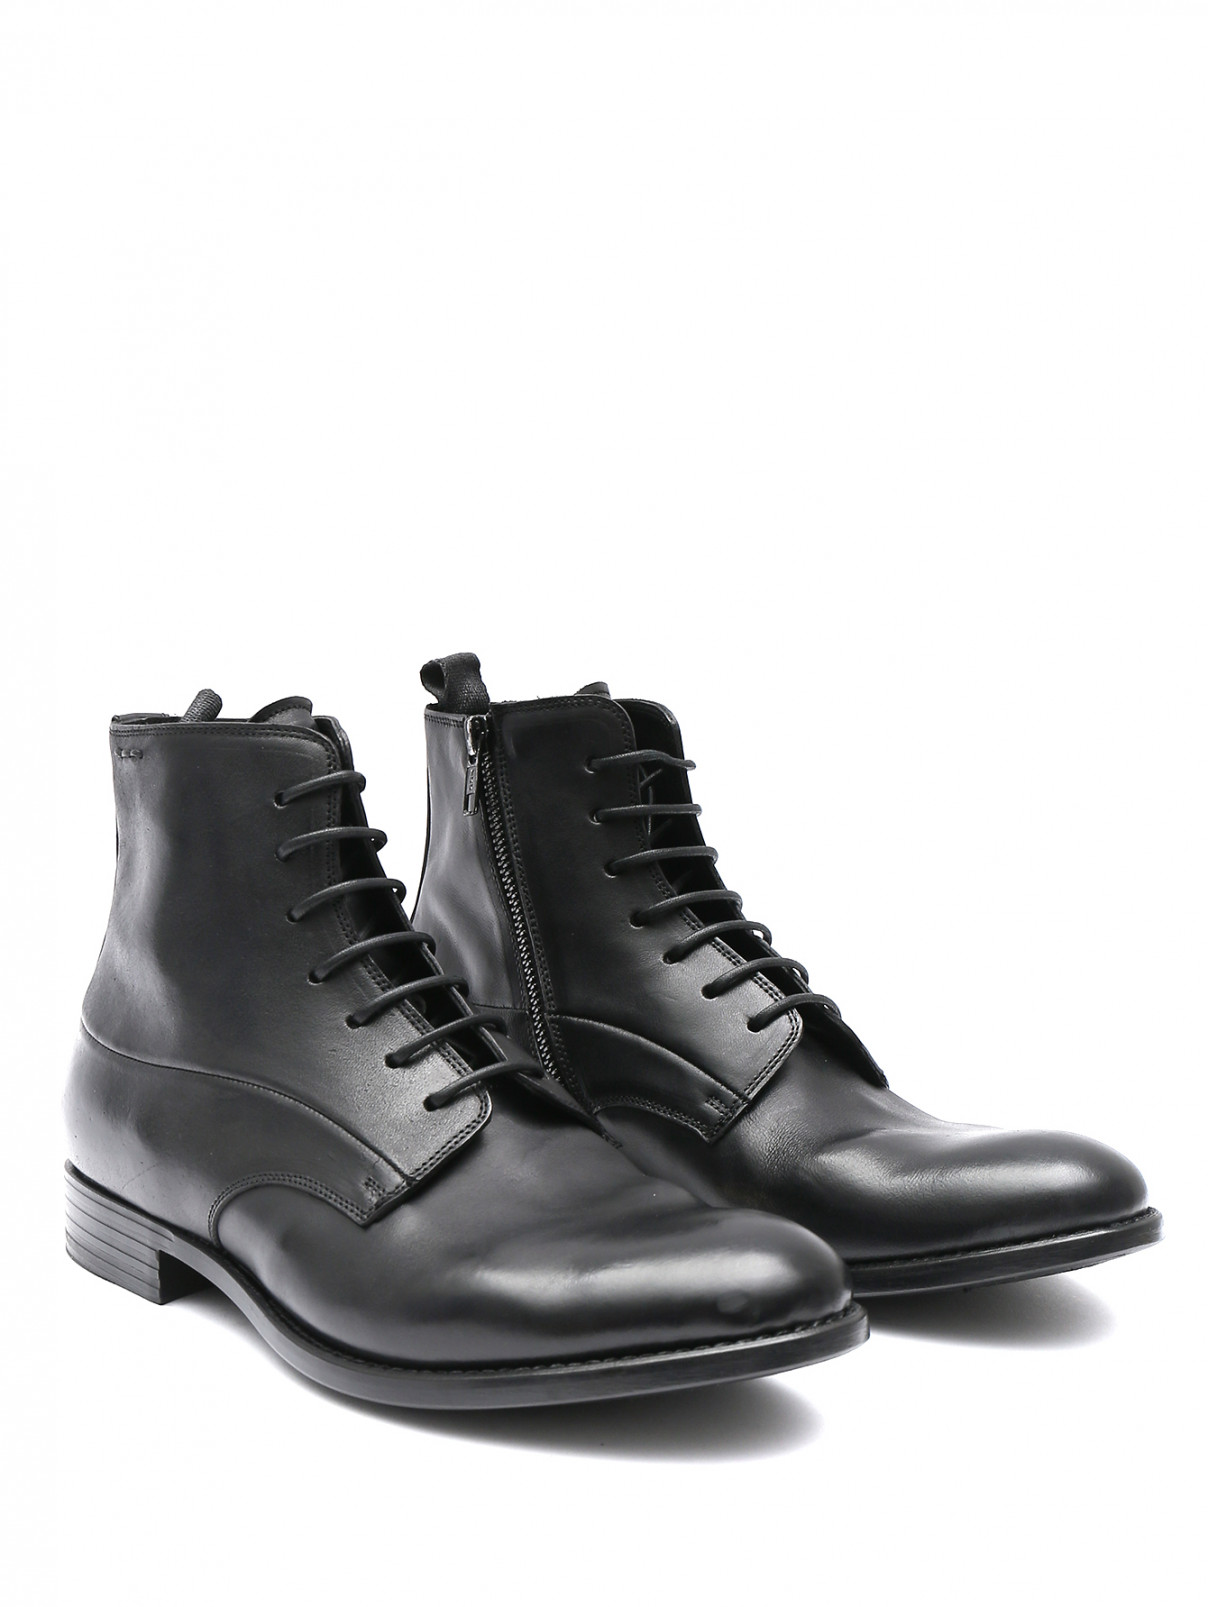 Ботинки из гладкой кожи на шнурках Alexander Hotto  –  Общий вид  – Цвет:  Черный